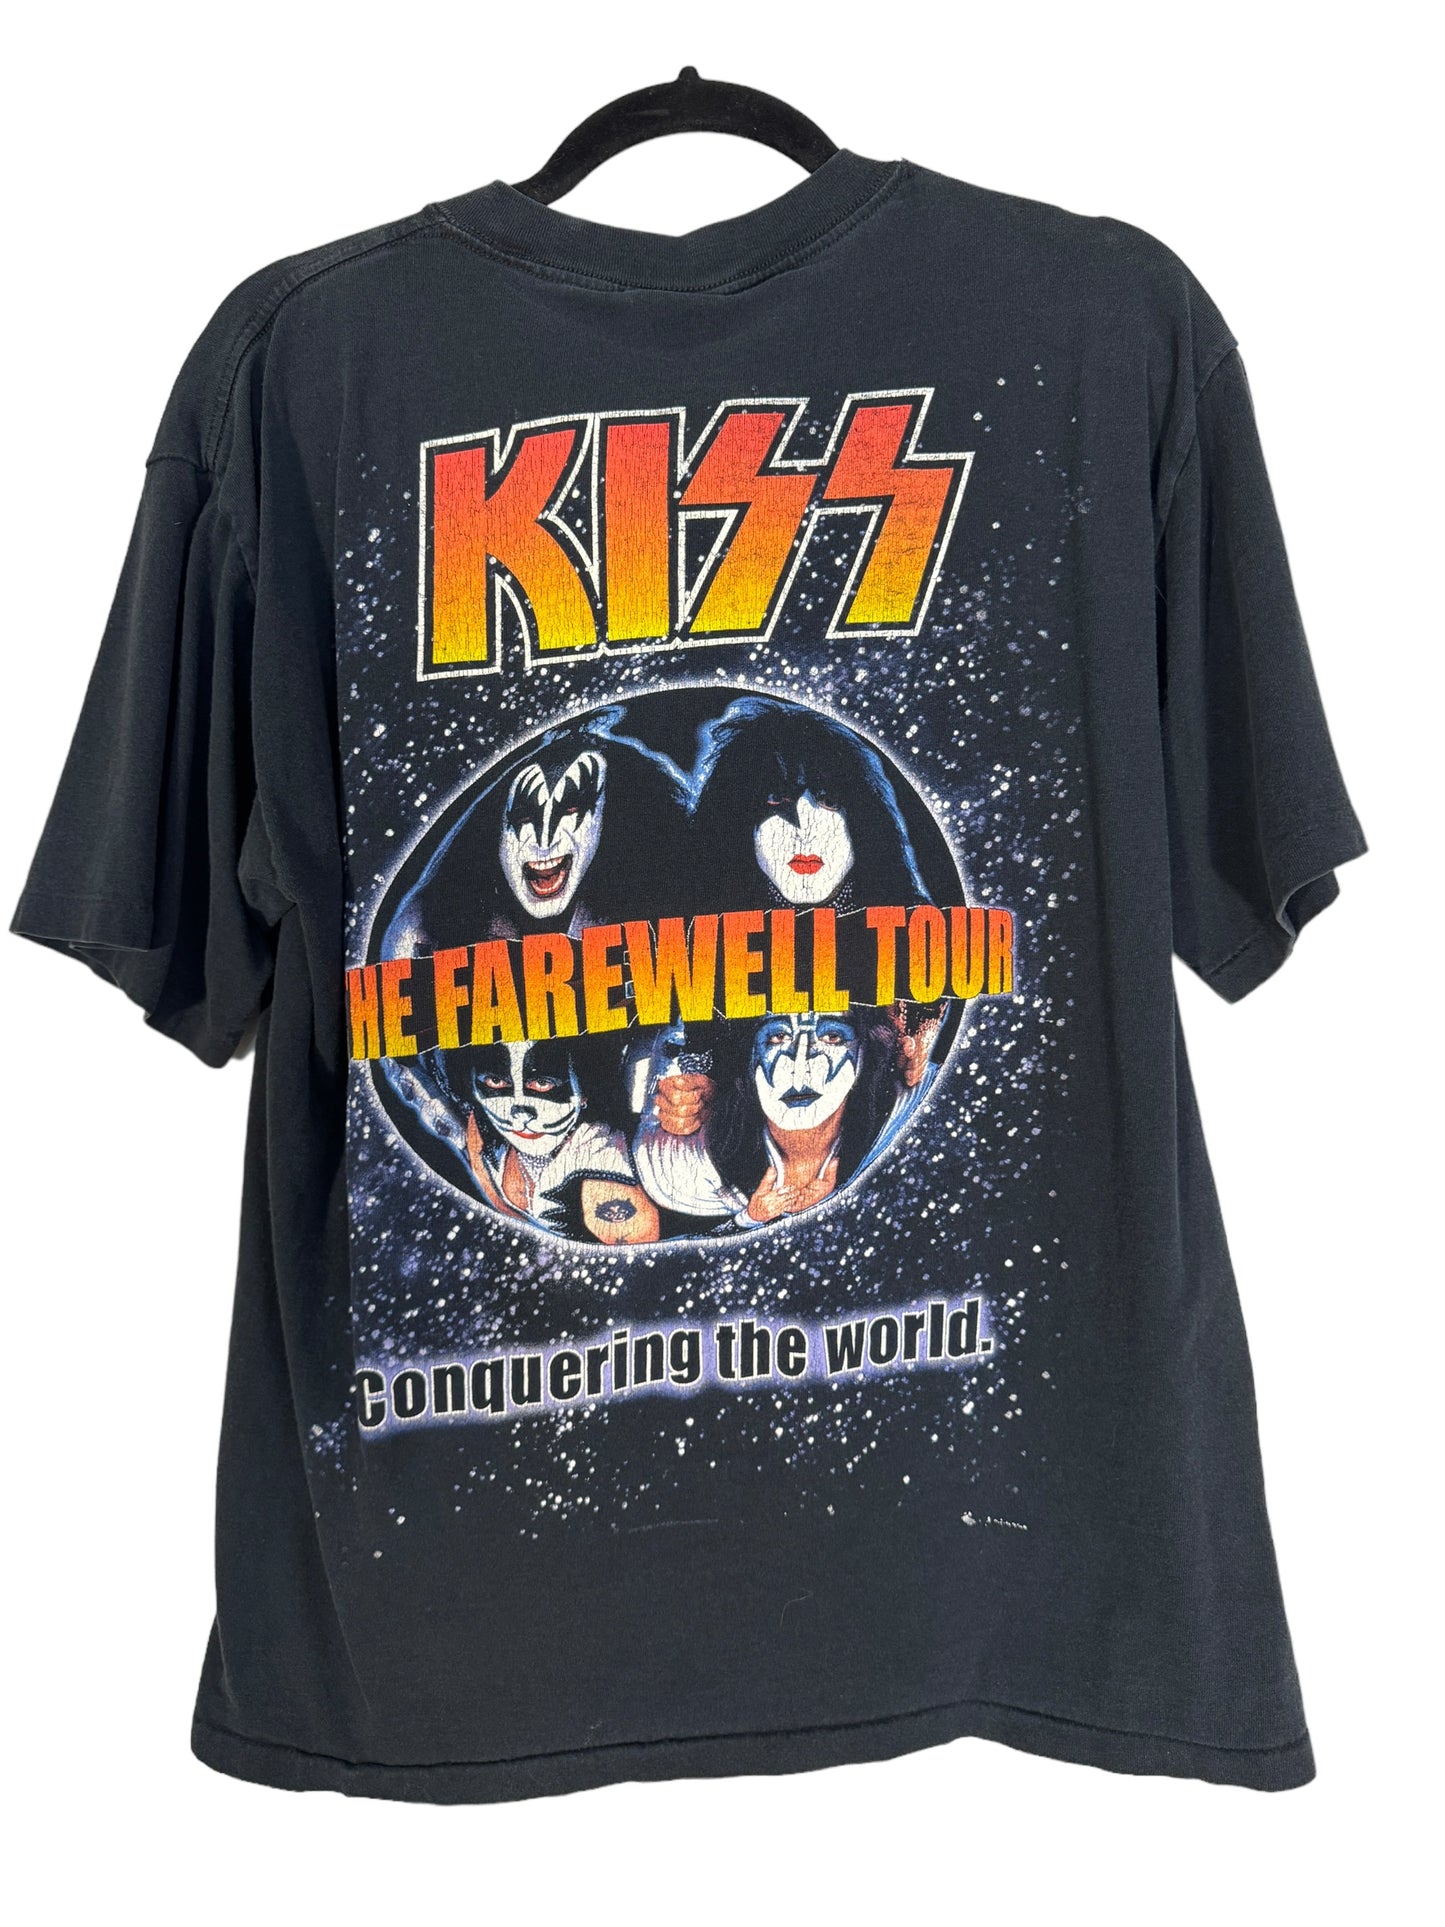 Vintage KISS Shirt KISS The Farewell Tour 2000